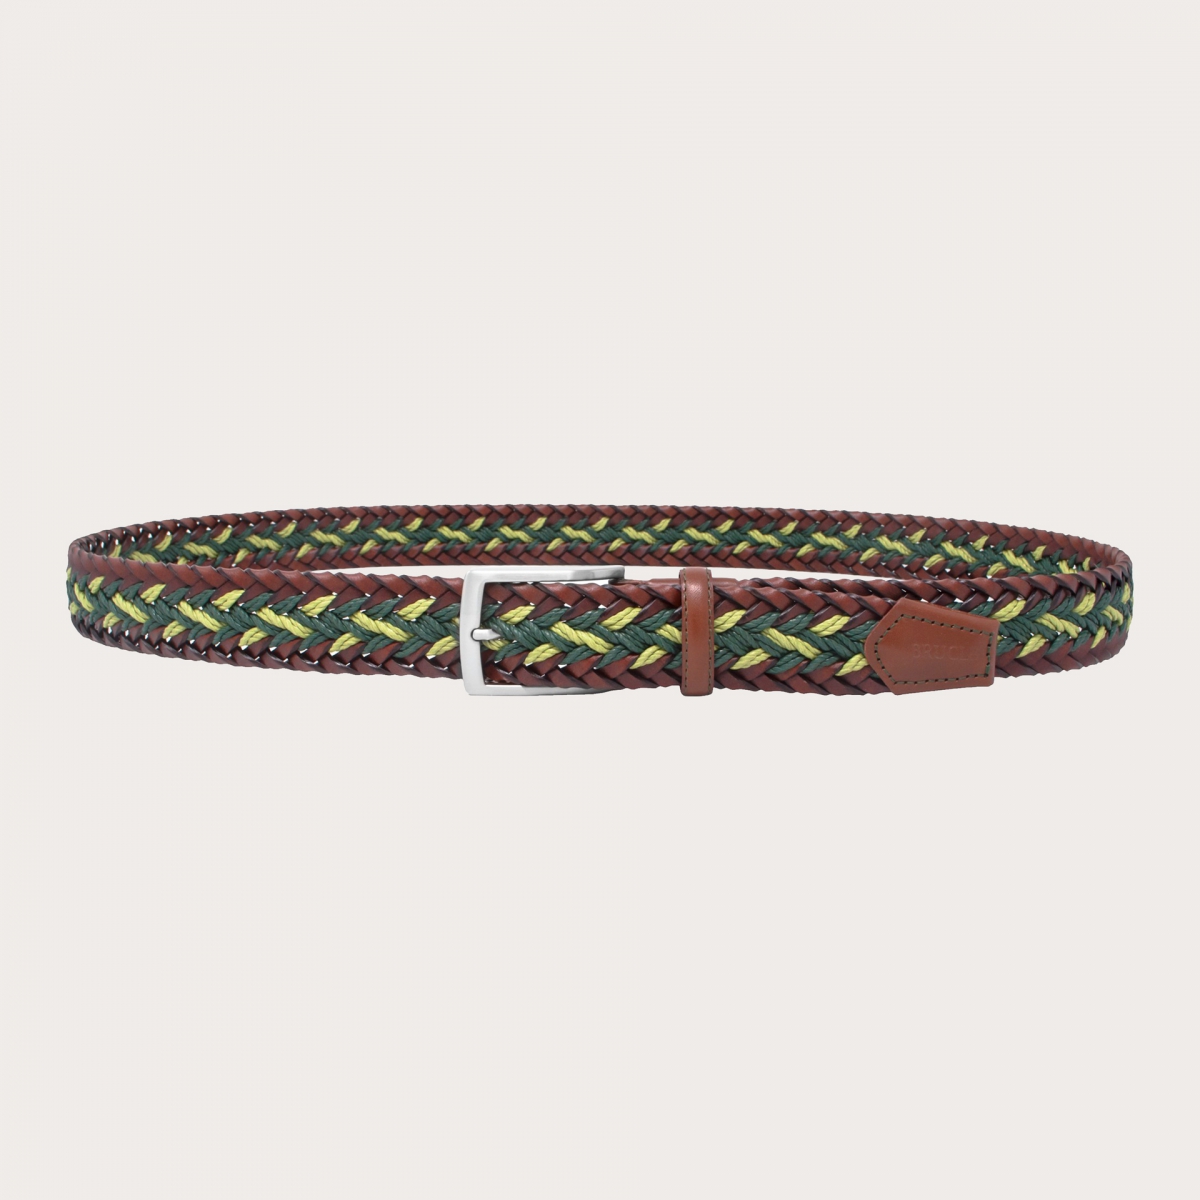 BRUCLE Cintura intrecciata verde e marrone in cuoio, corda e cotone